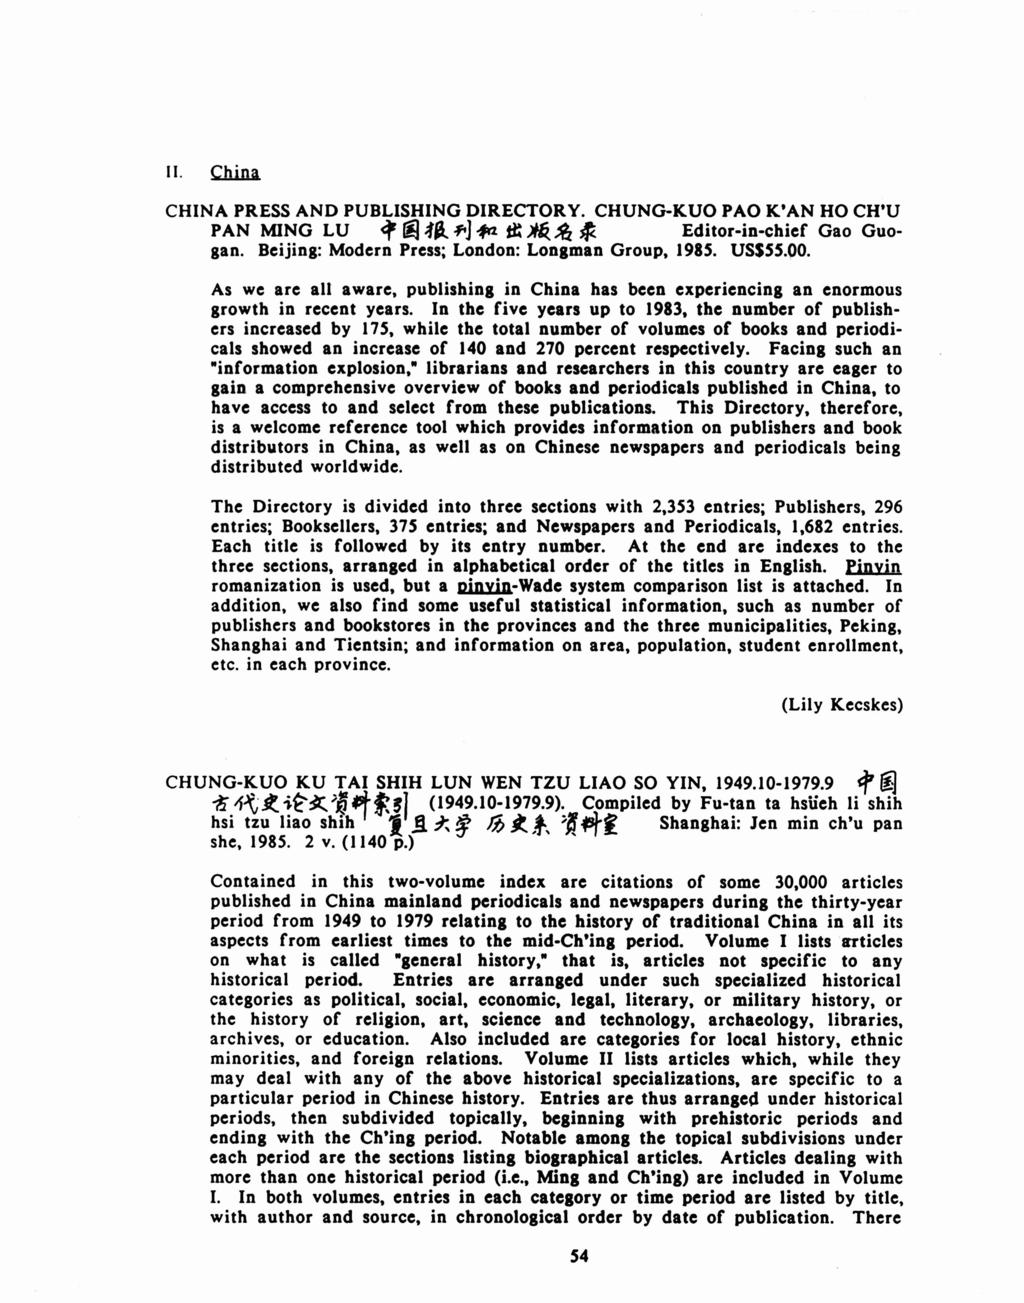 II. Qtini. CHINA PRESS AND PUBLISHING DIRECTORY. CHUNG-KUO PAO K'AN HO CH'U PAN MING LU ~ rij:fa oft] -fw1 it ~~ ~ Editor-in-chief Gao Guogan. Beijing: Modern Press; London: Longman Group, 1985.